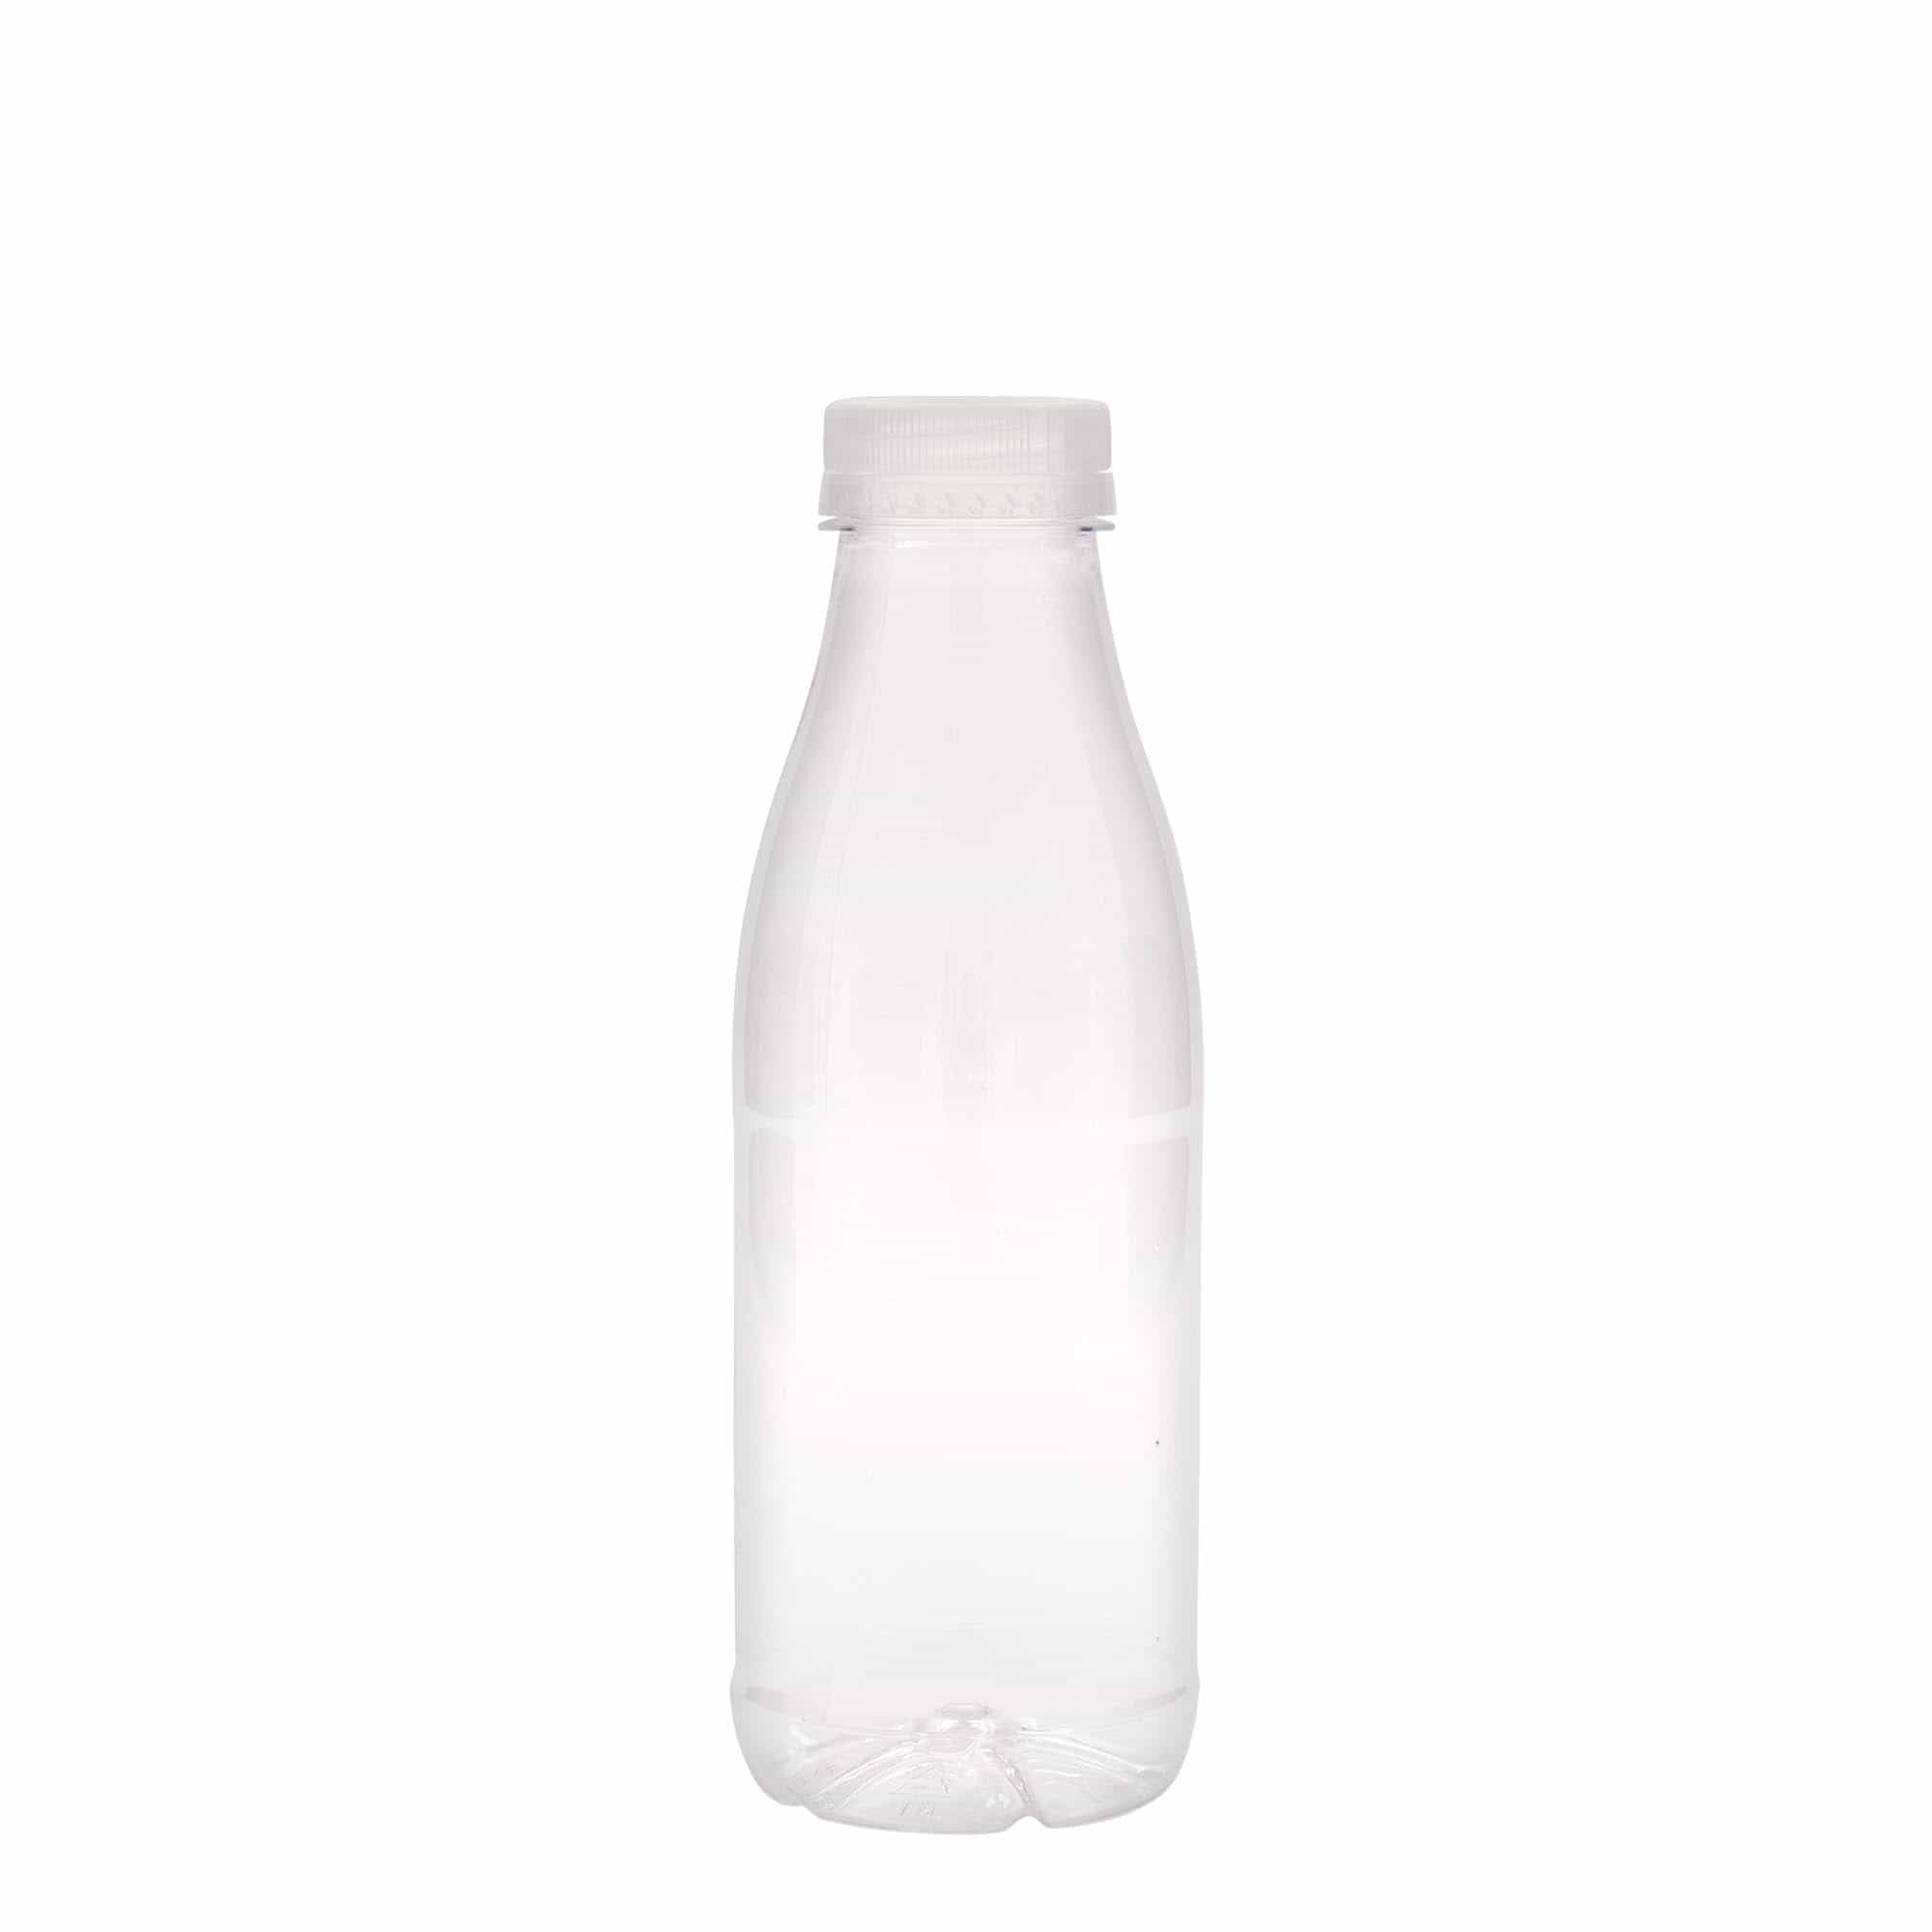 500 ml PET bottle 'Milk and Juice', plastic, closure: 38 mm